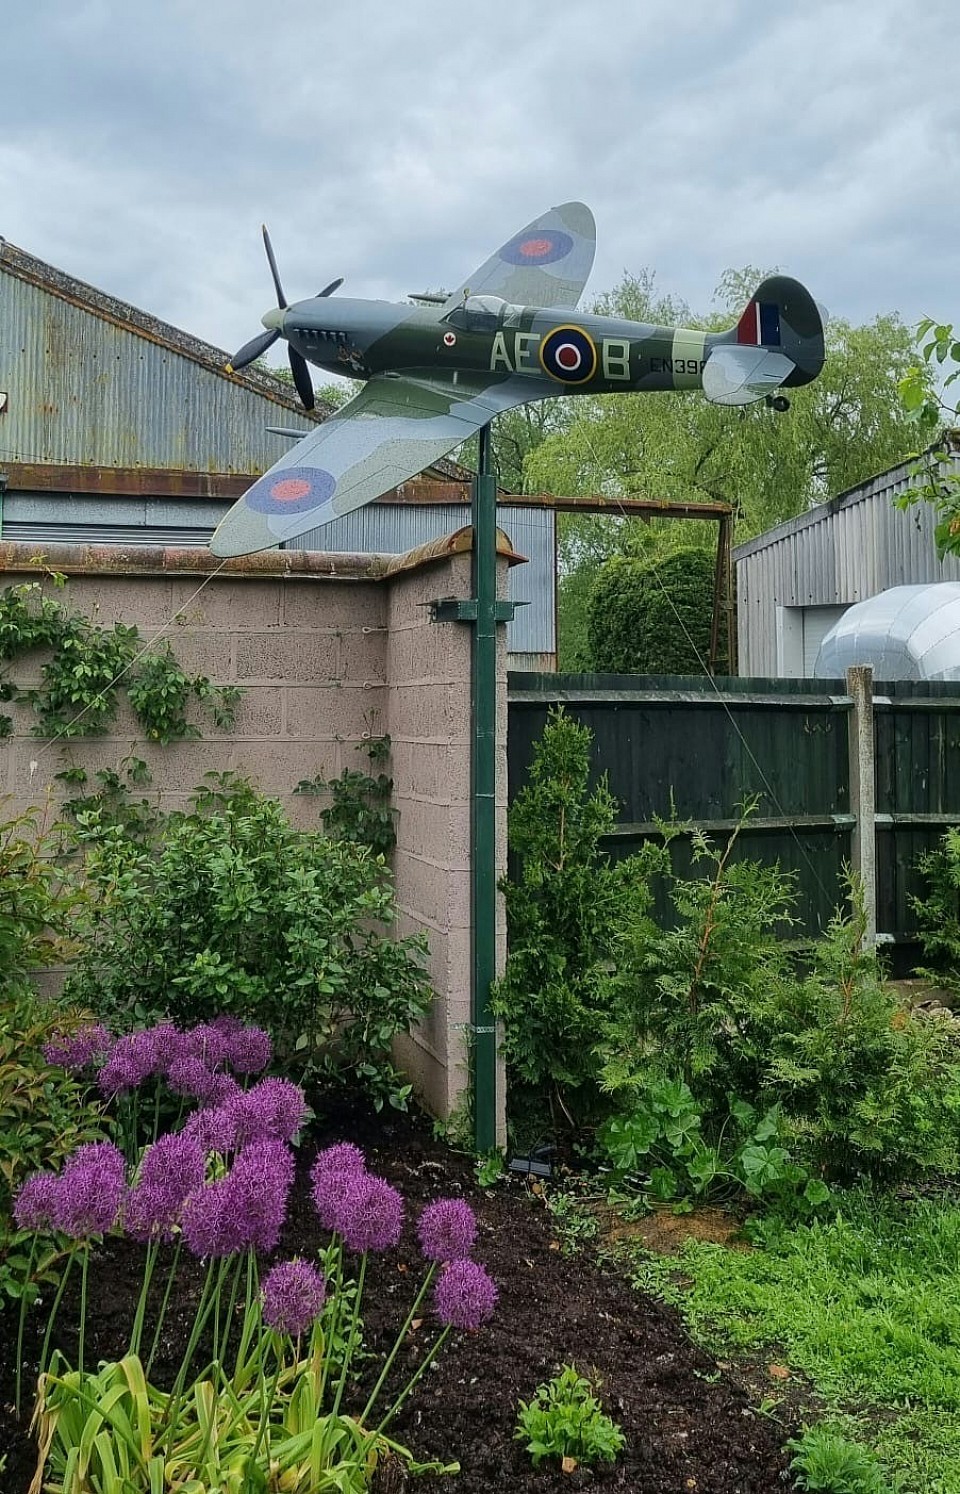 MK IX Spitfire replica in its new home